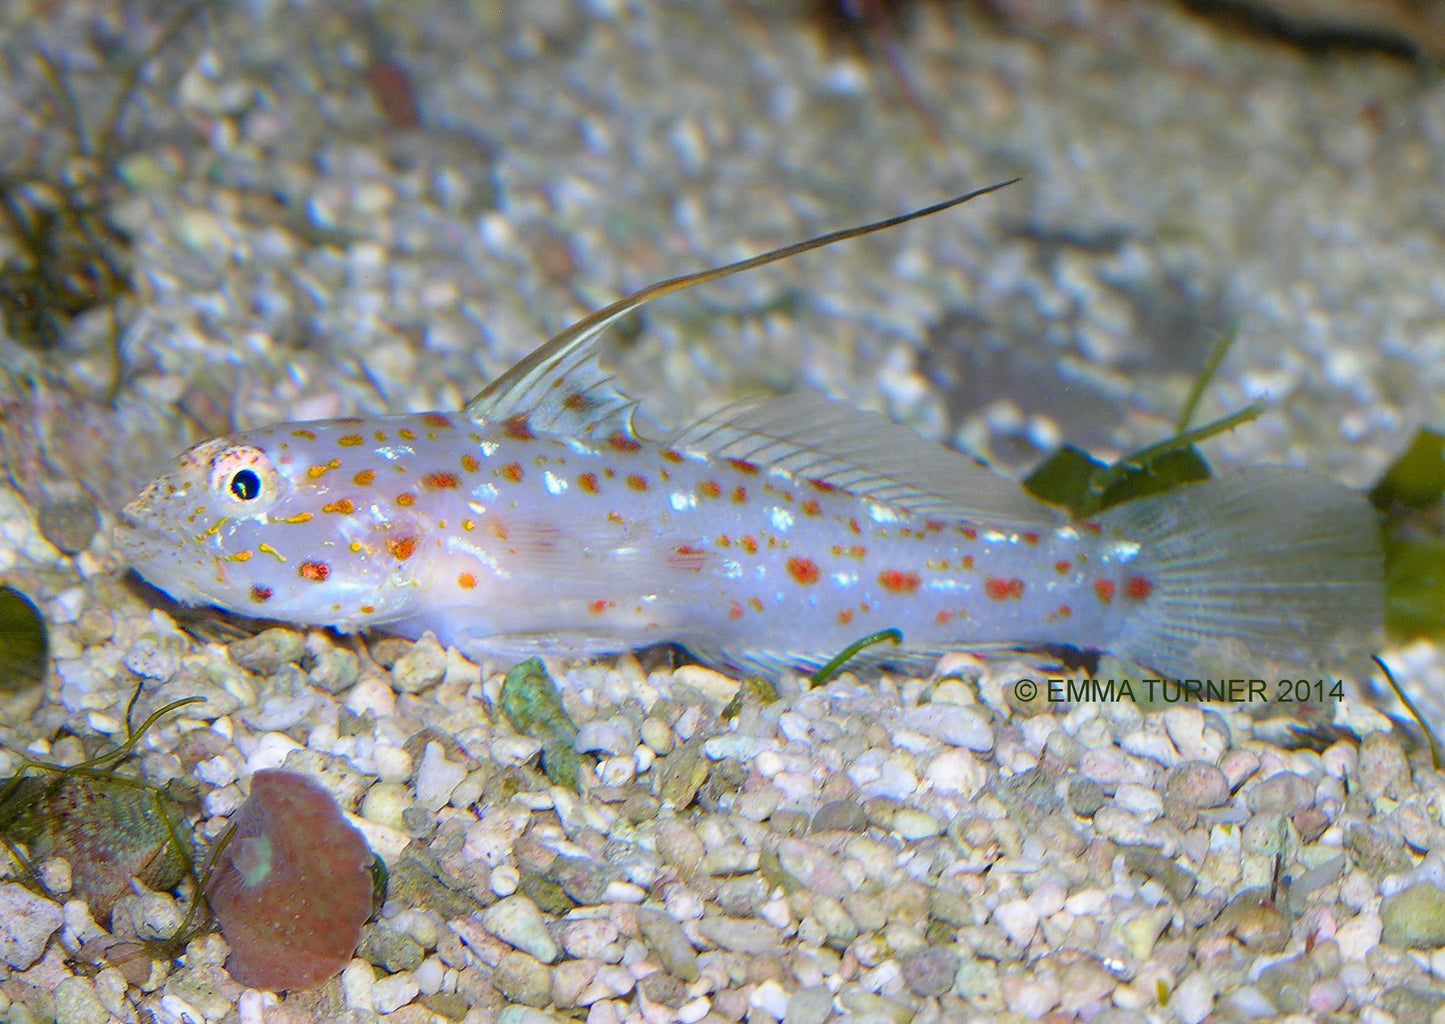 Ctenogobiops tangaroai (Tangaroa Shrimp goby)